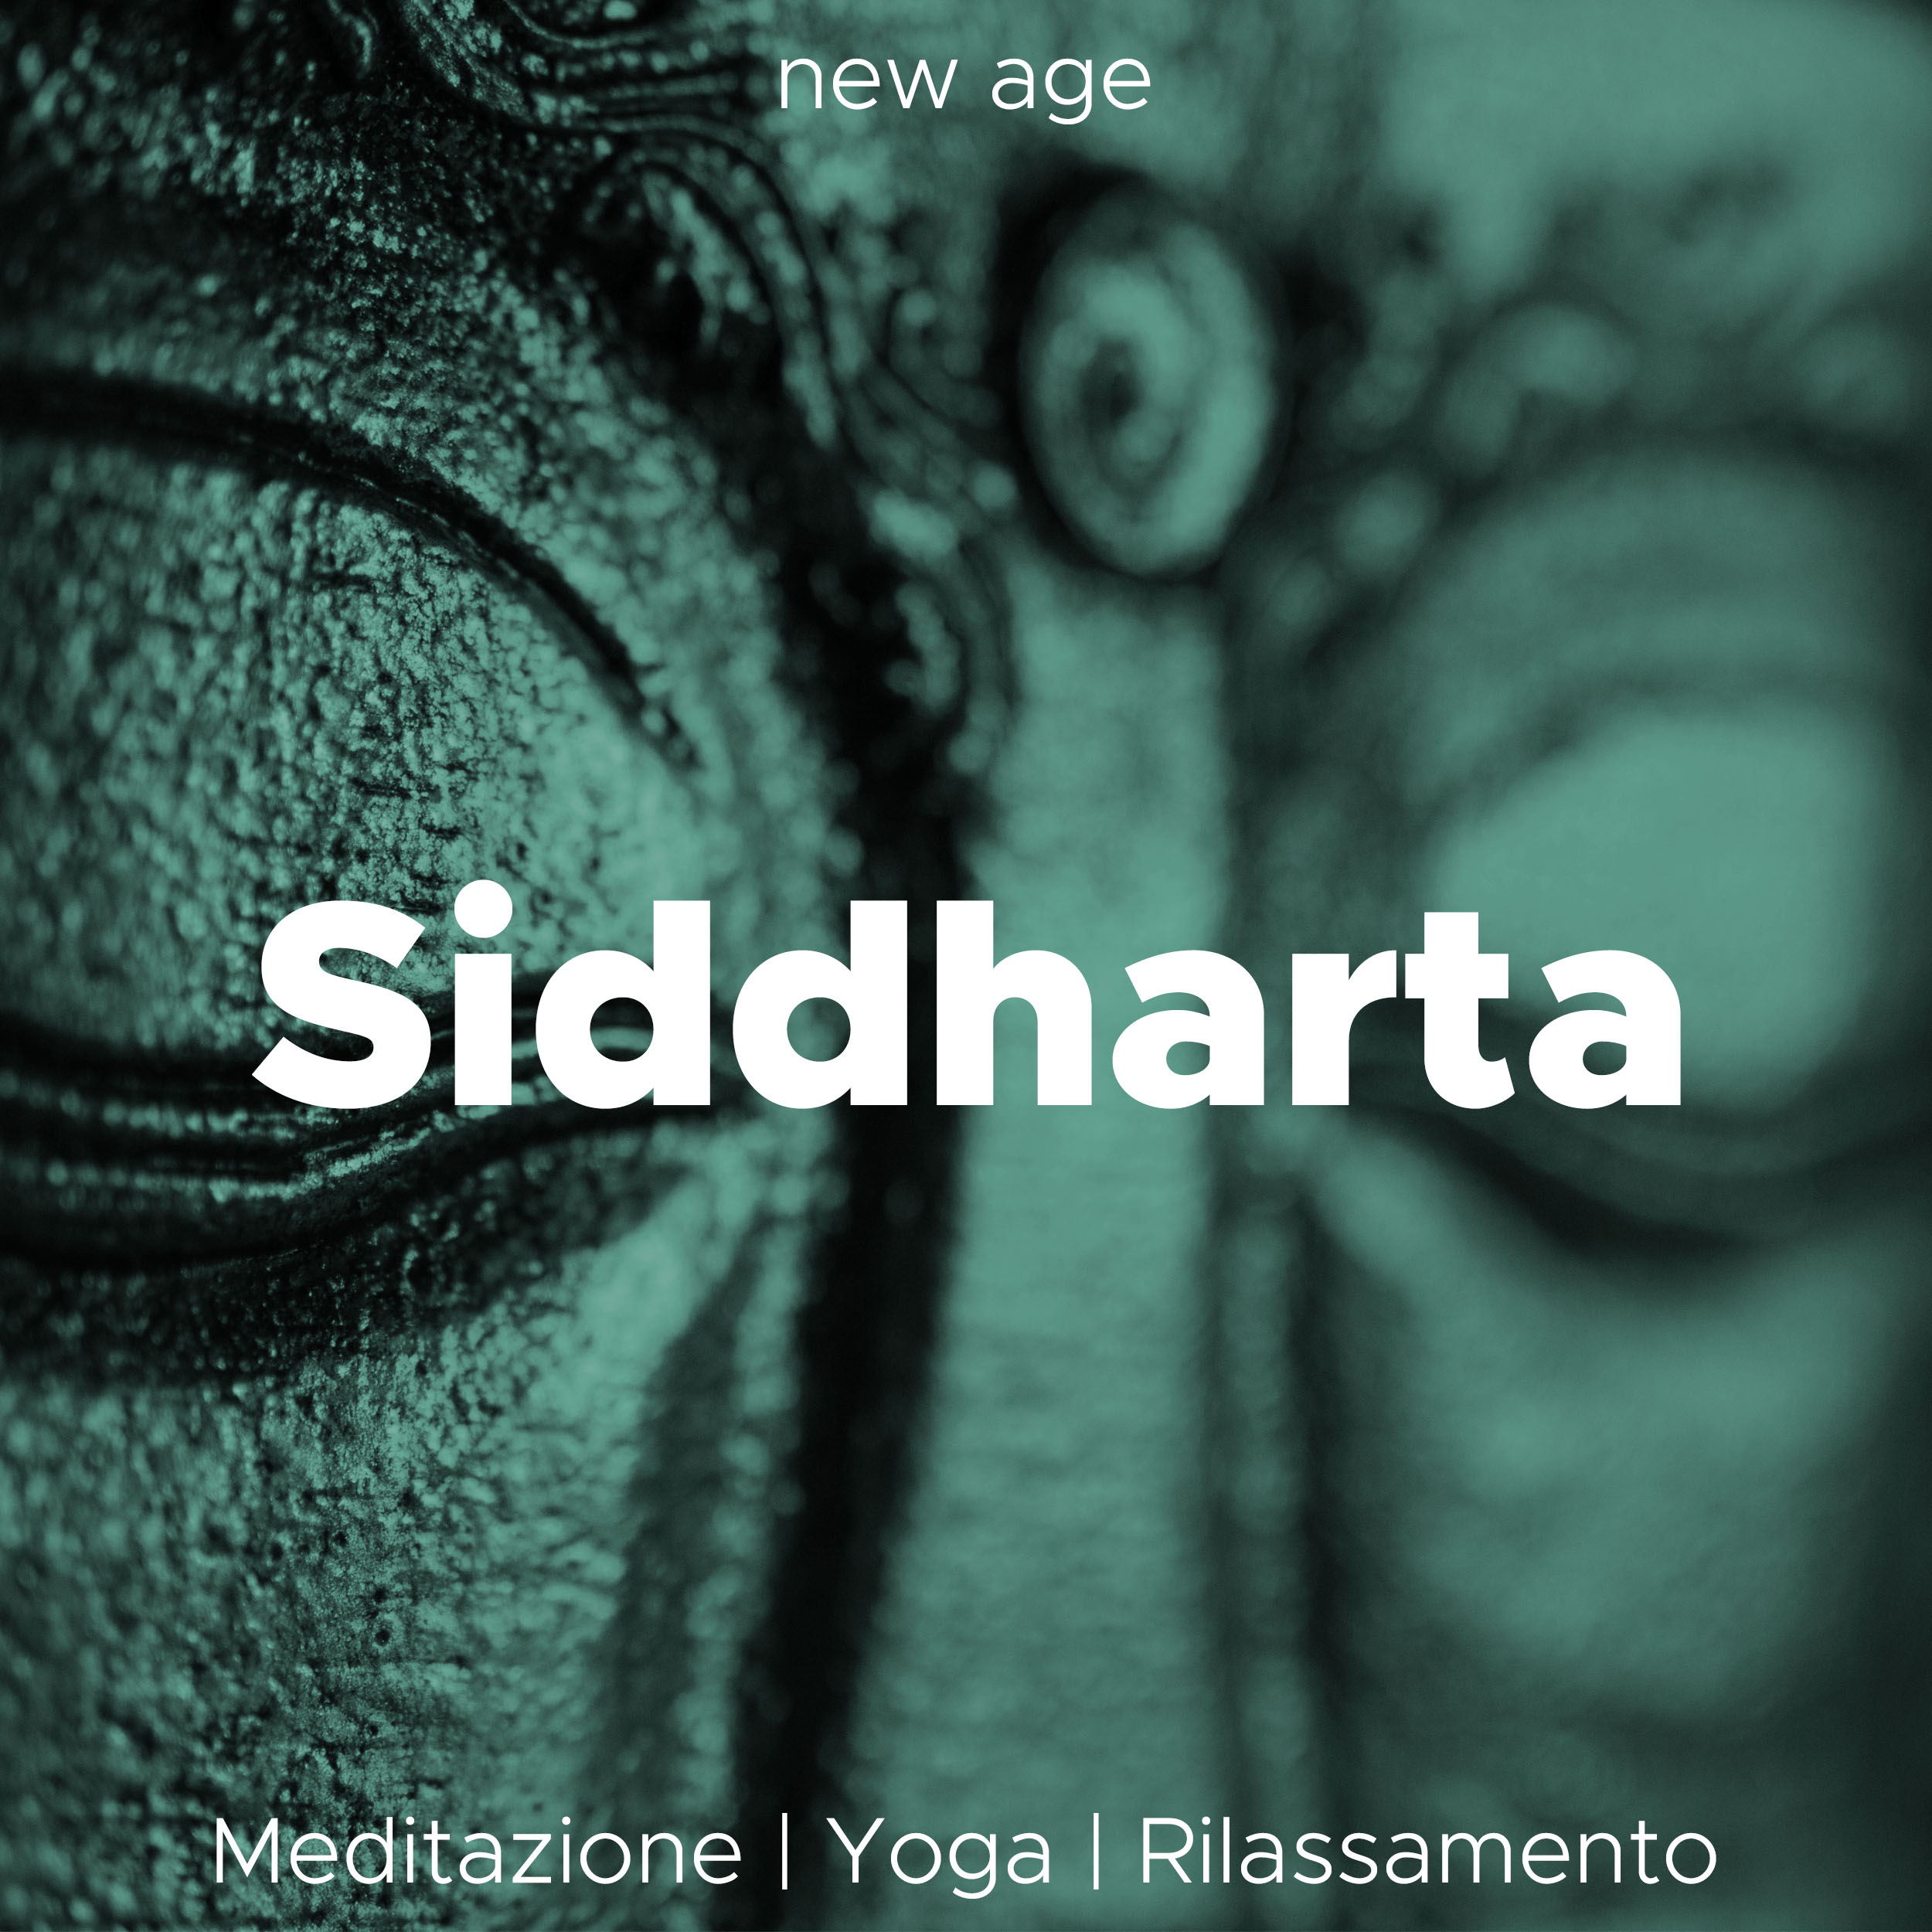 Siddharta - lo Spirito di Buddha. Musica Rilassante per la Meditazione, Yoga e Rilassamento